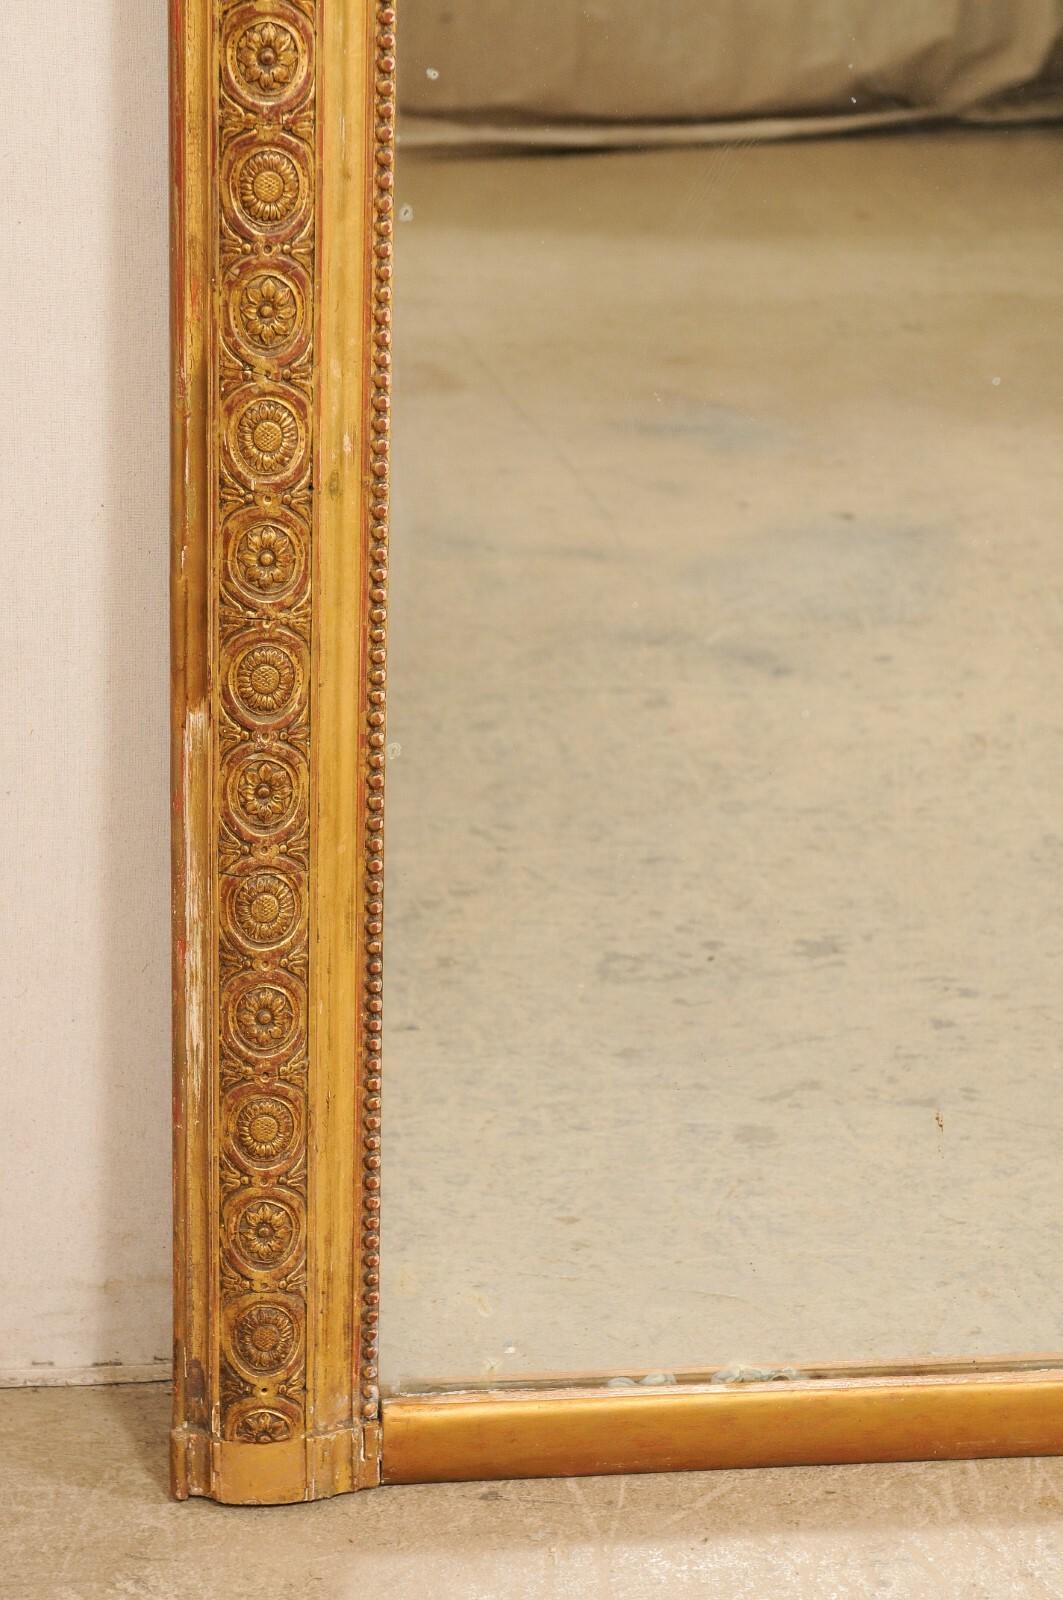 Grand miroir français en bois sculpté et doré de la fin du XIXe siècle. Ce miroir ancien de France présente un cadre rectangulaire avec un motif floral répétitif en médaillon sculpté dans la moulure centrale, et un doux petit cadre intérieur perlé à